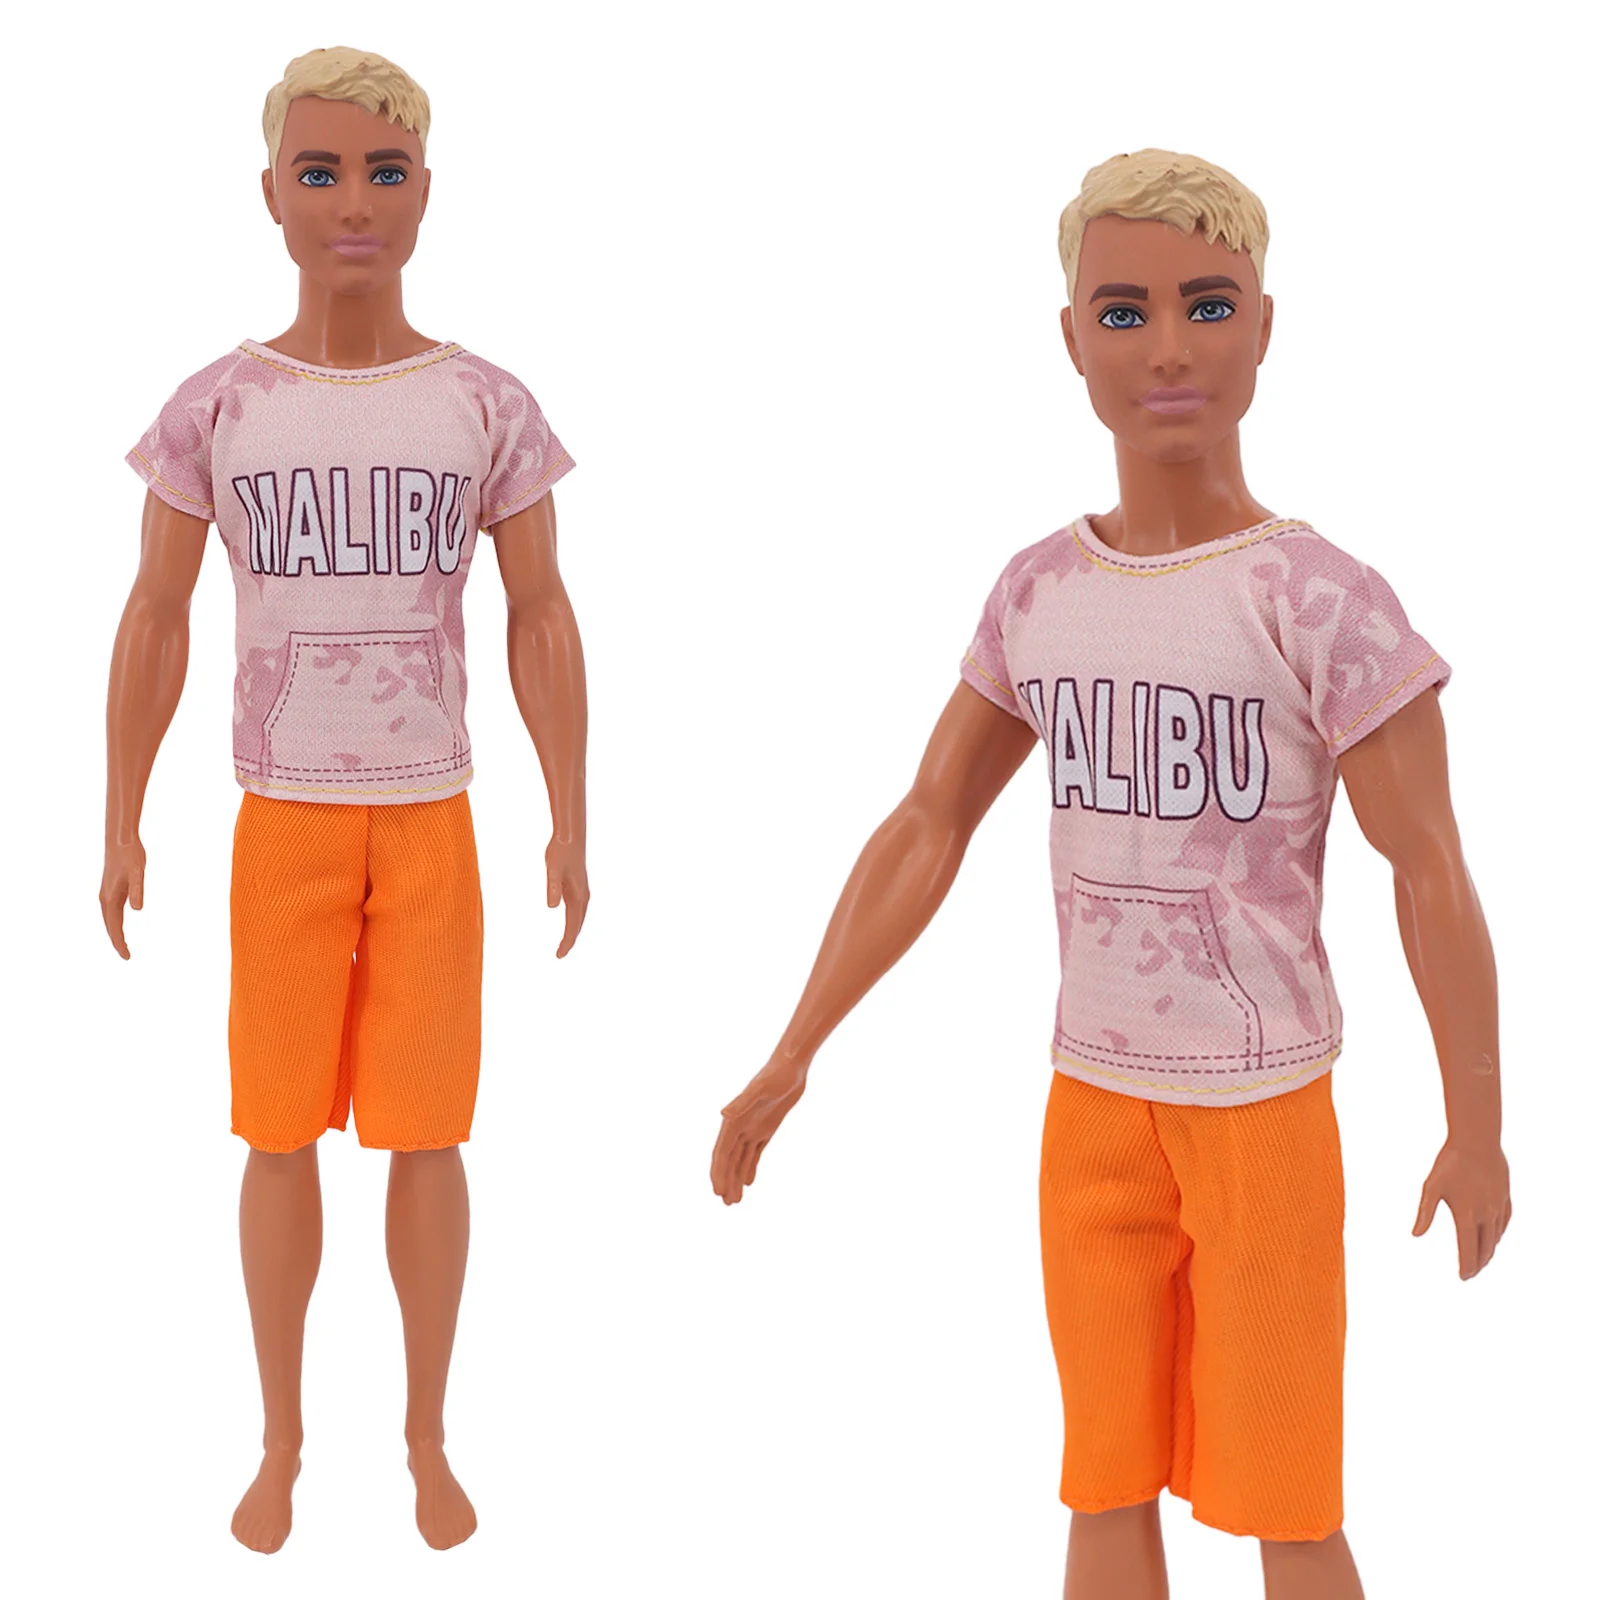 Танец барби и кена. Аксессуары для Барби и Кена. Одежда Кена из Барби. Кен из Барби в костюме. Футболка с Кеном из Барби.